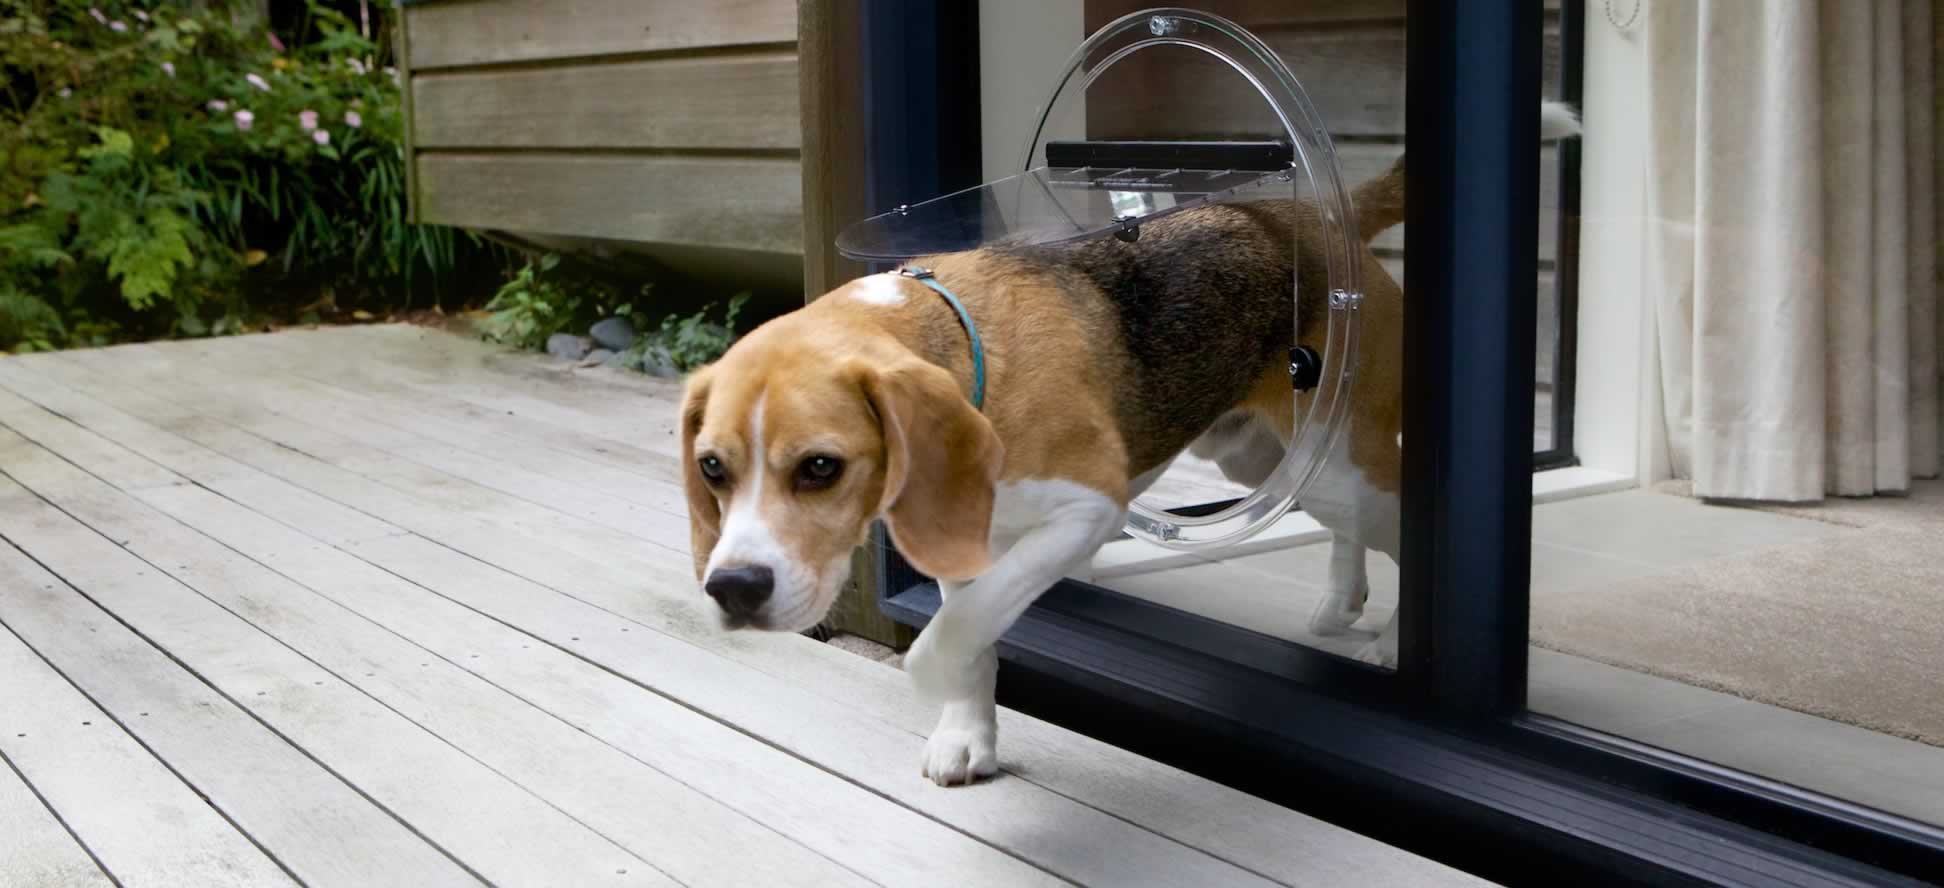 heb vertrouwen japon praktijk Pet Doors, Dog Doors and Cat Doors in Glass | O'Brien Glass®